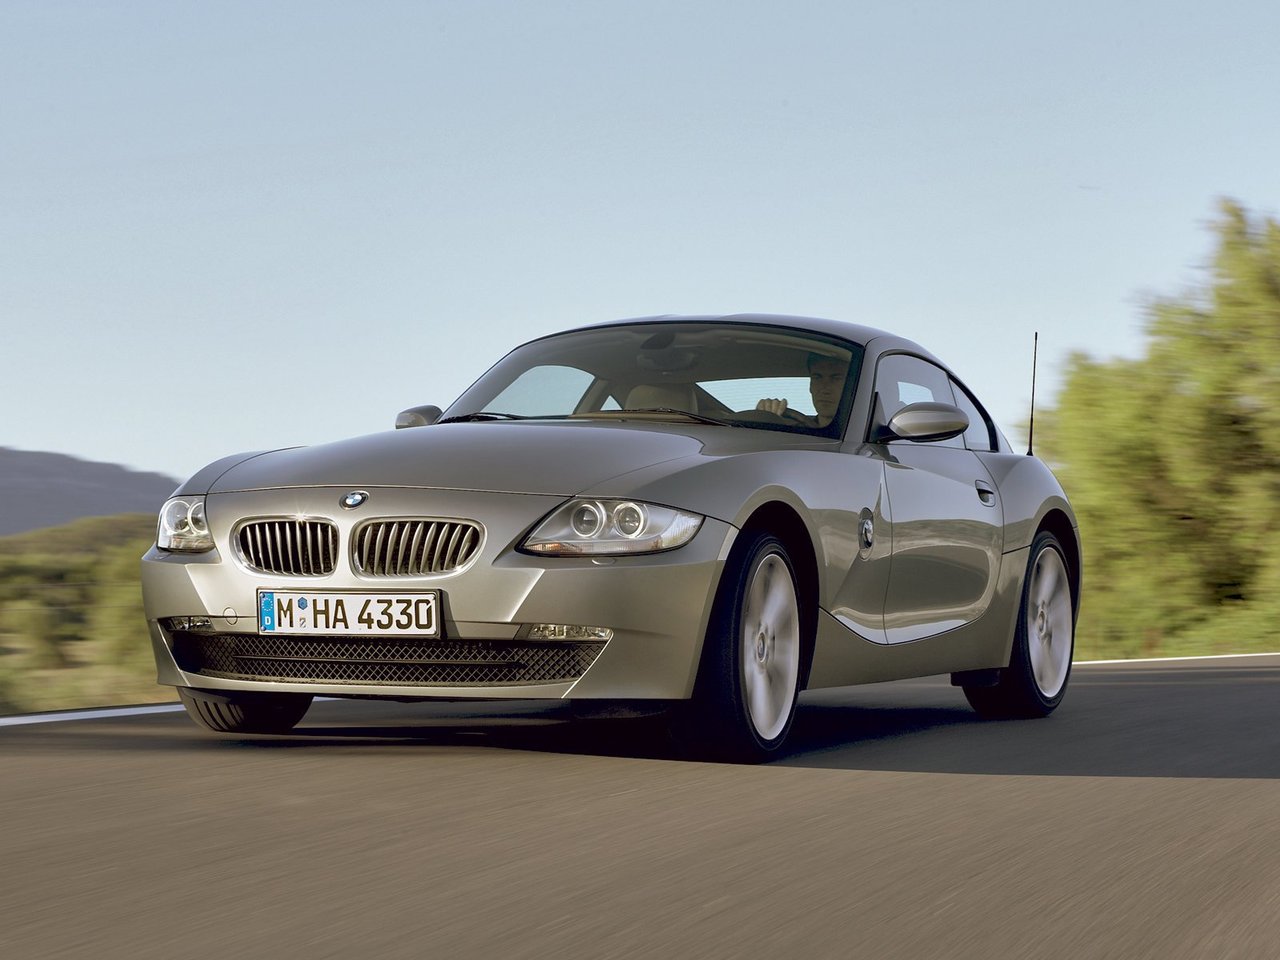 Расход газа двух комплектаций купе BMW Z4. Разница стоимости заправки газом и бензином. Автономный пробег до и после установки ГБО.